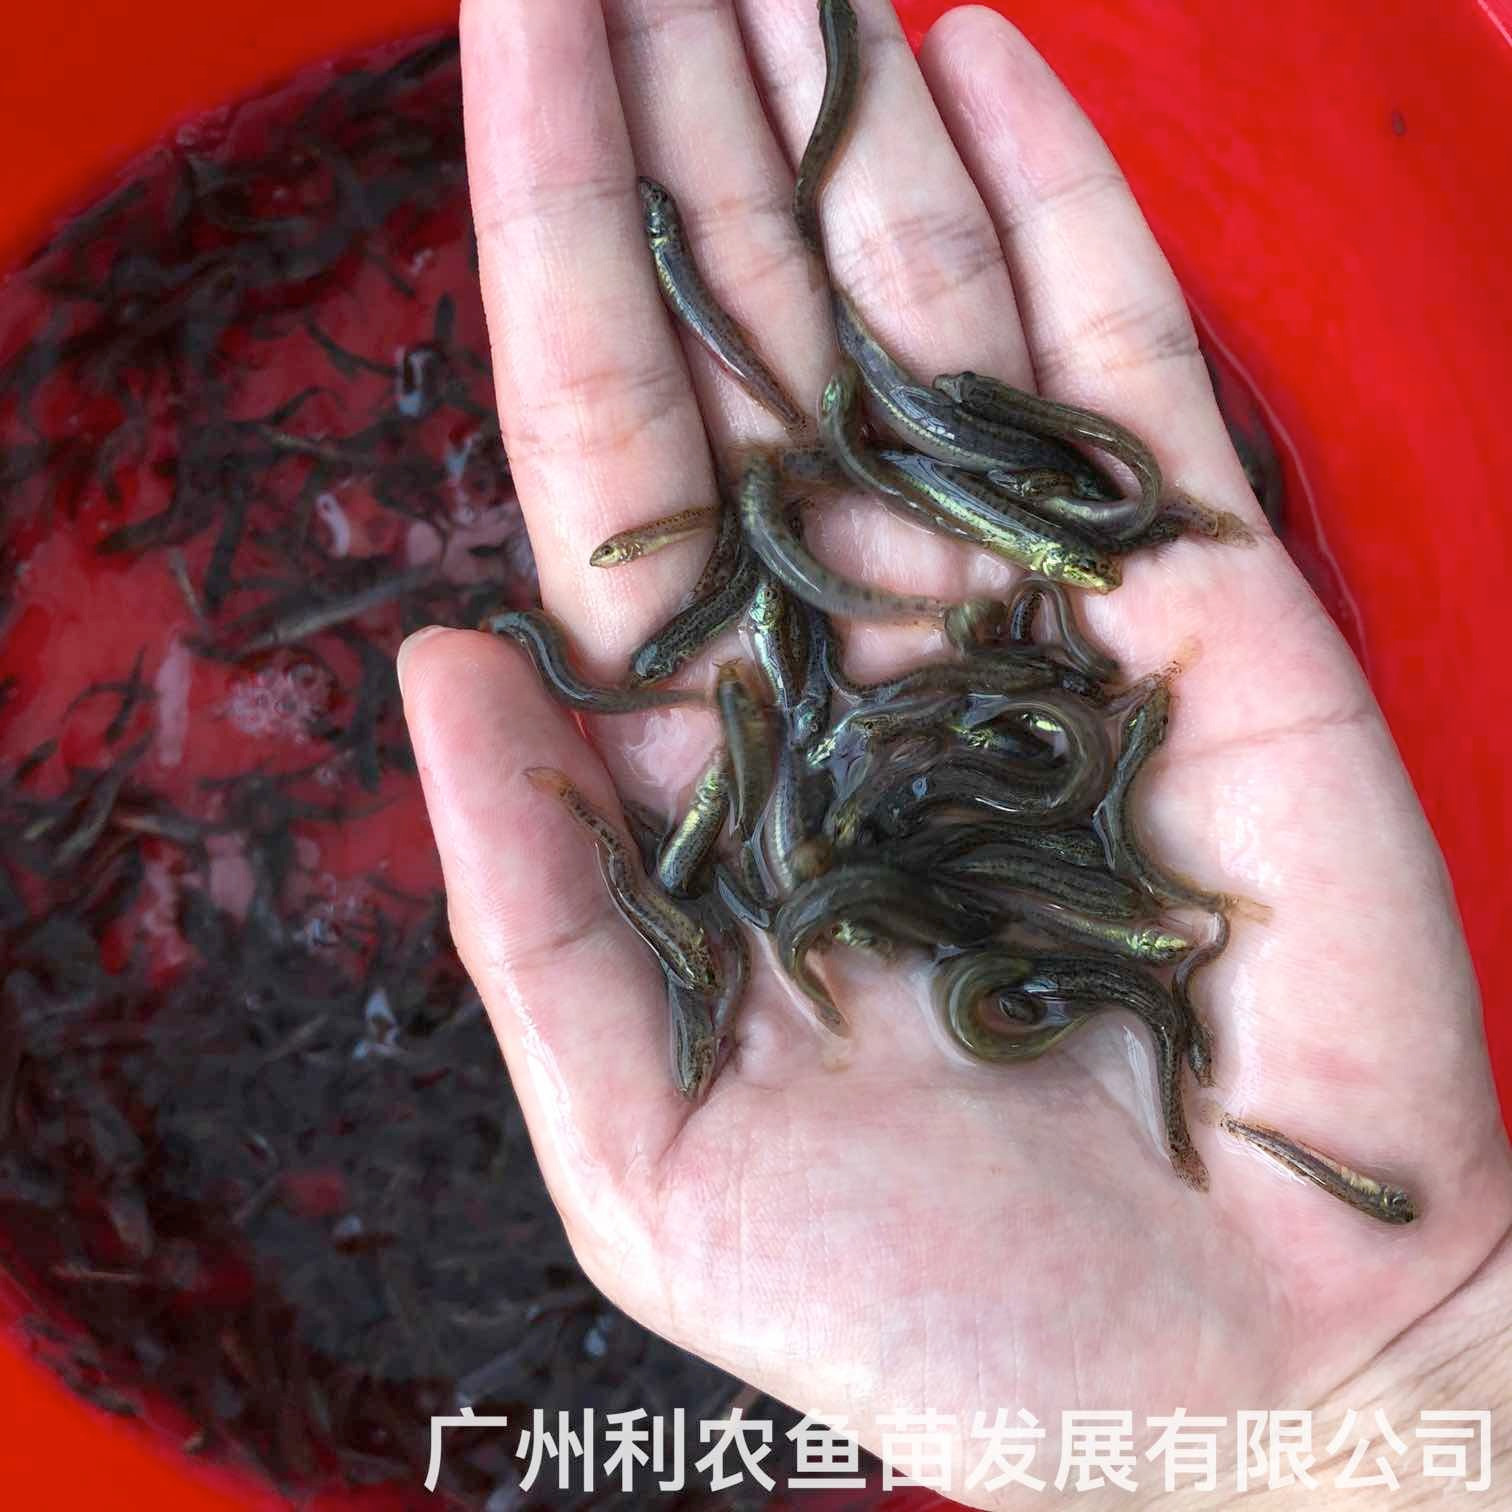 广东德庆台湾泥鳅苗出售广东高州泥鳅鱼苗批发